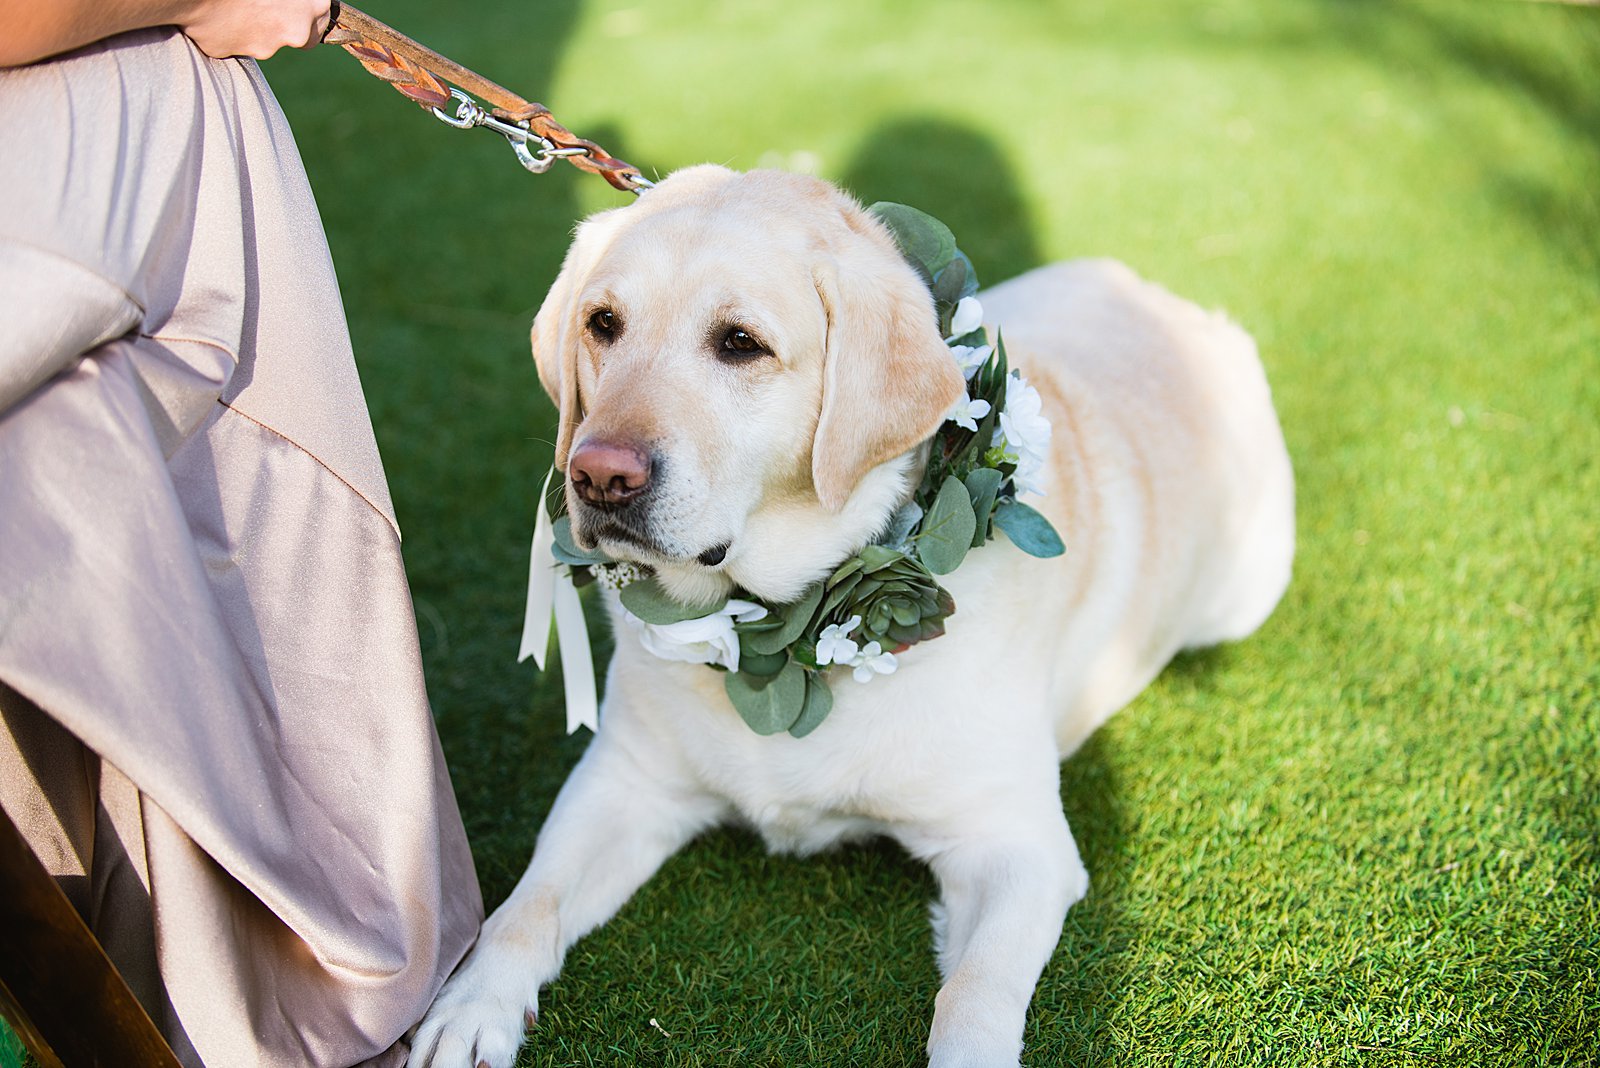 Bride's dog enjoying the wedding ceremony by PMA Photography.